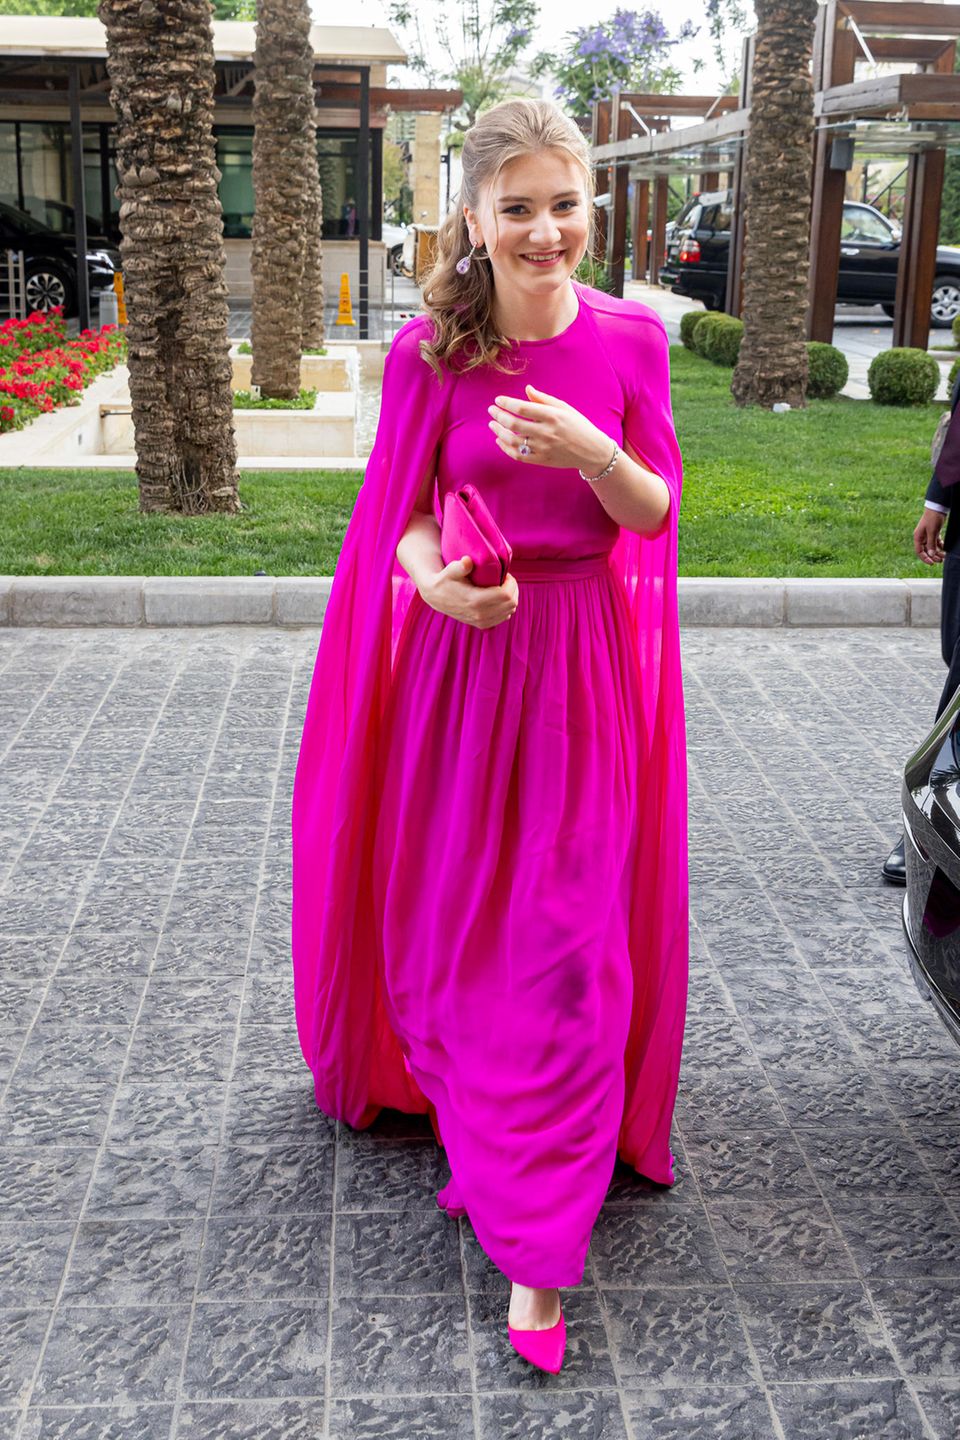 Fröhlich zeigt sich Kronprinzessin Elisabeth von Belgien in fuchsiafarbener Robe von Essentiel Antwerp. Ihr elegantes Kleid besticht jedoch nicht nur durch die lebhafte Farbe, vor allem die Cape-Ärmel verleihen ihrem Look einen raffinierten Touch.